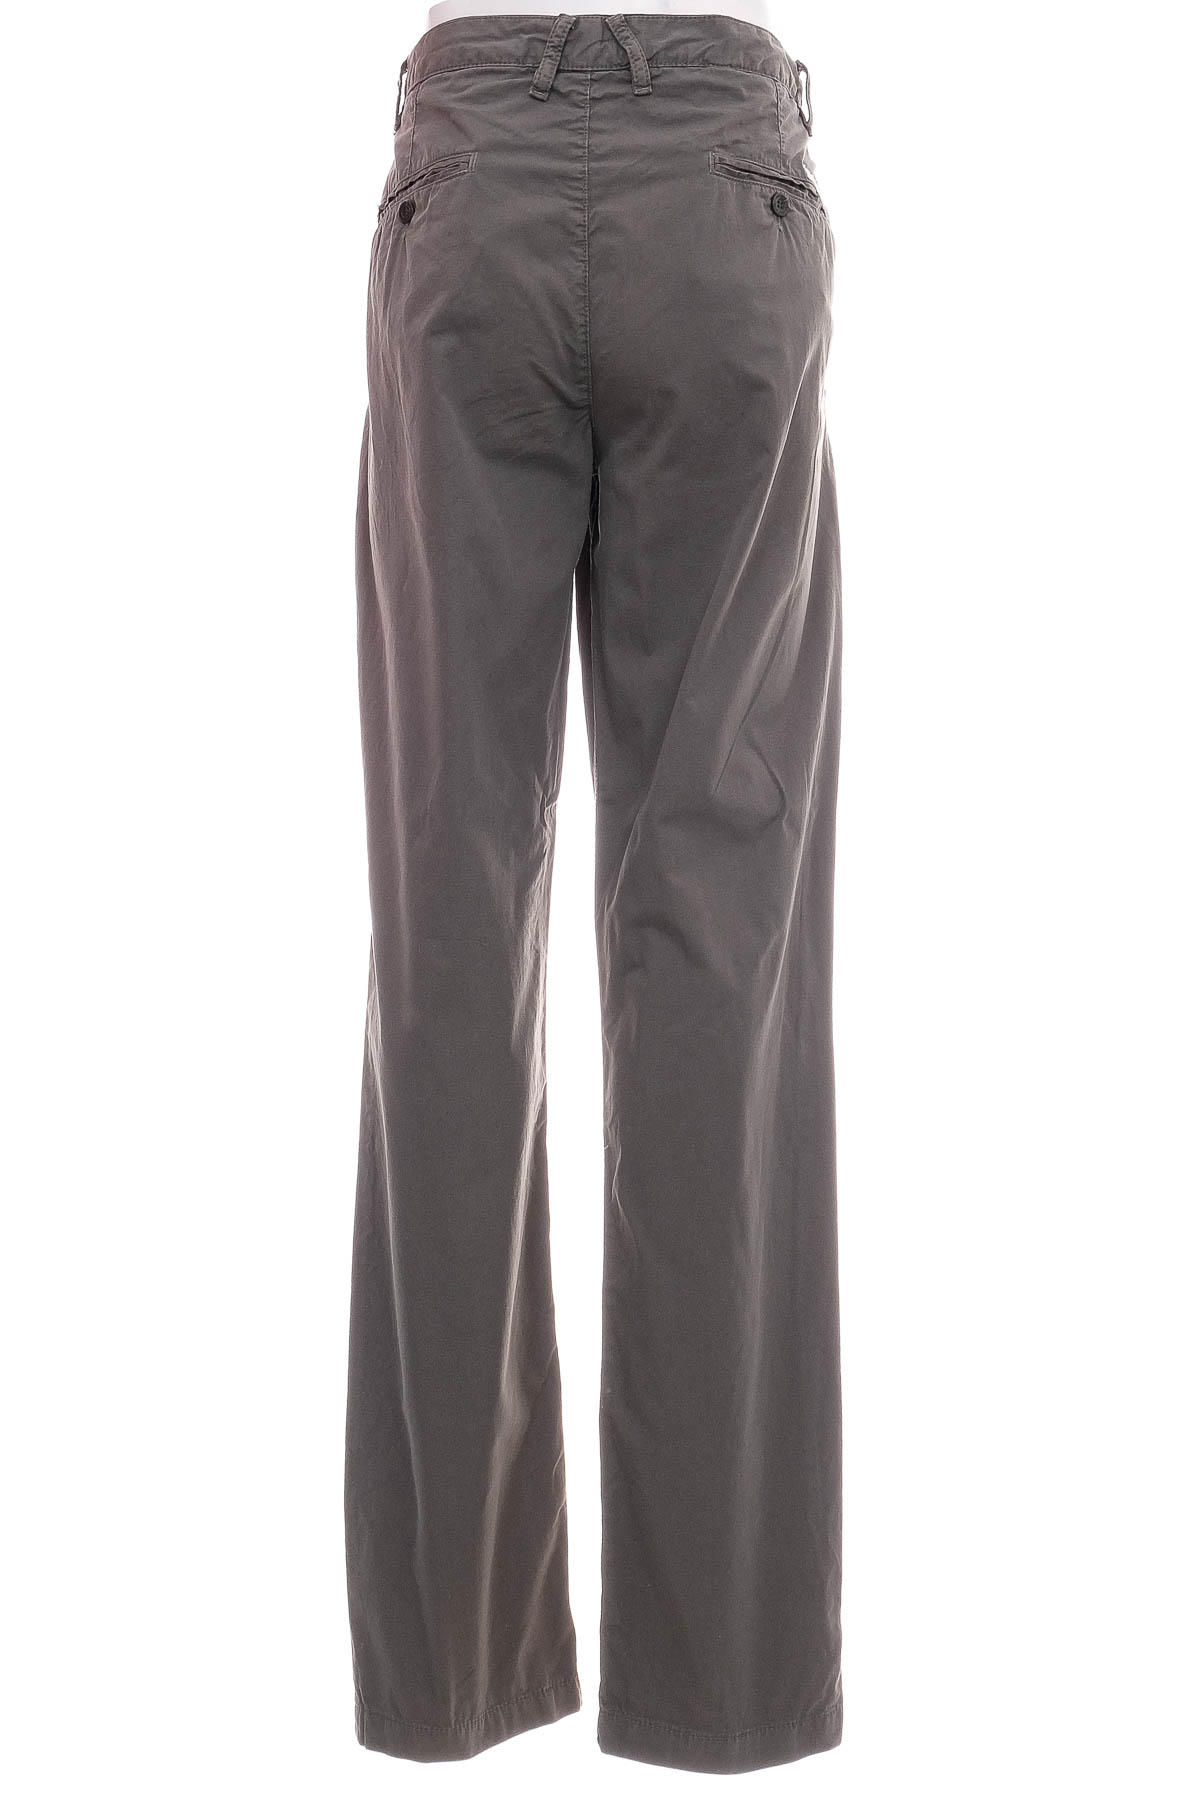 Pantalon pentru bărbați - U.S. Polo ASSN. - 1